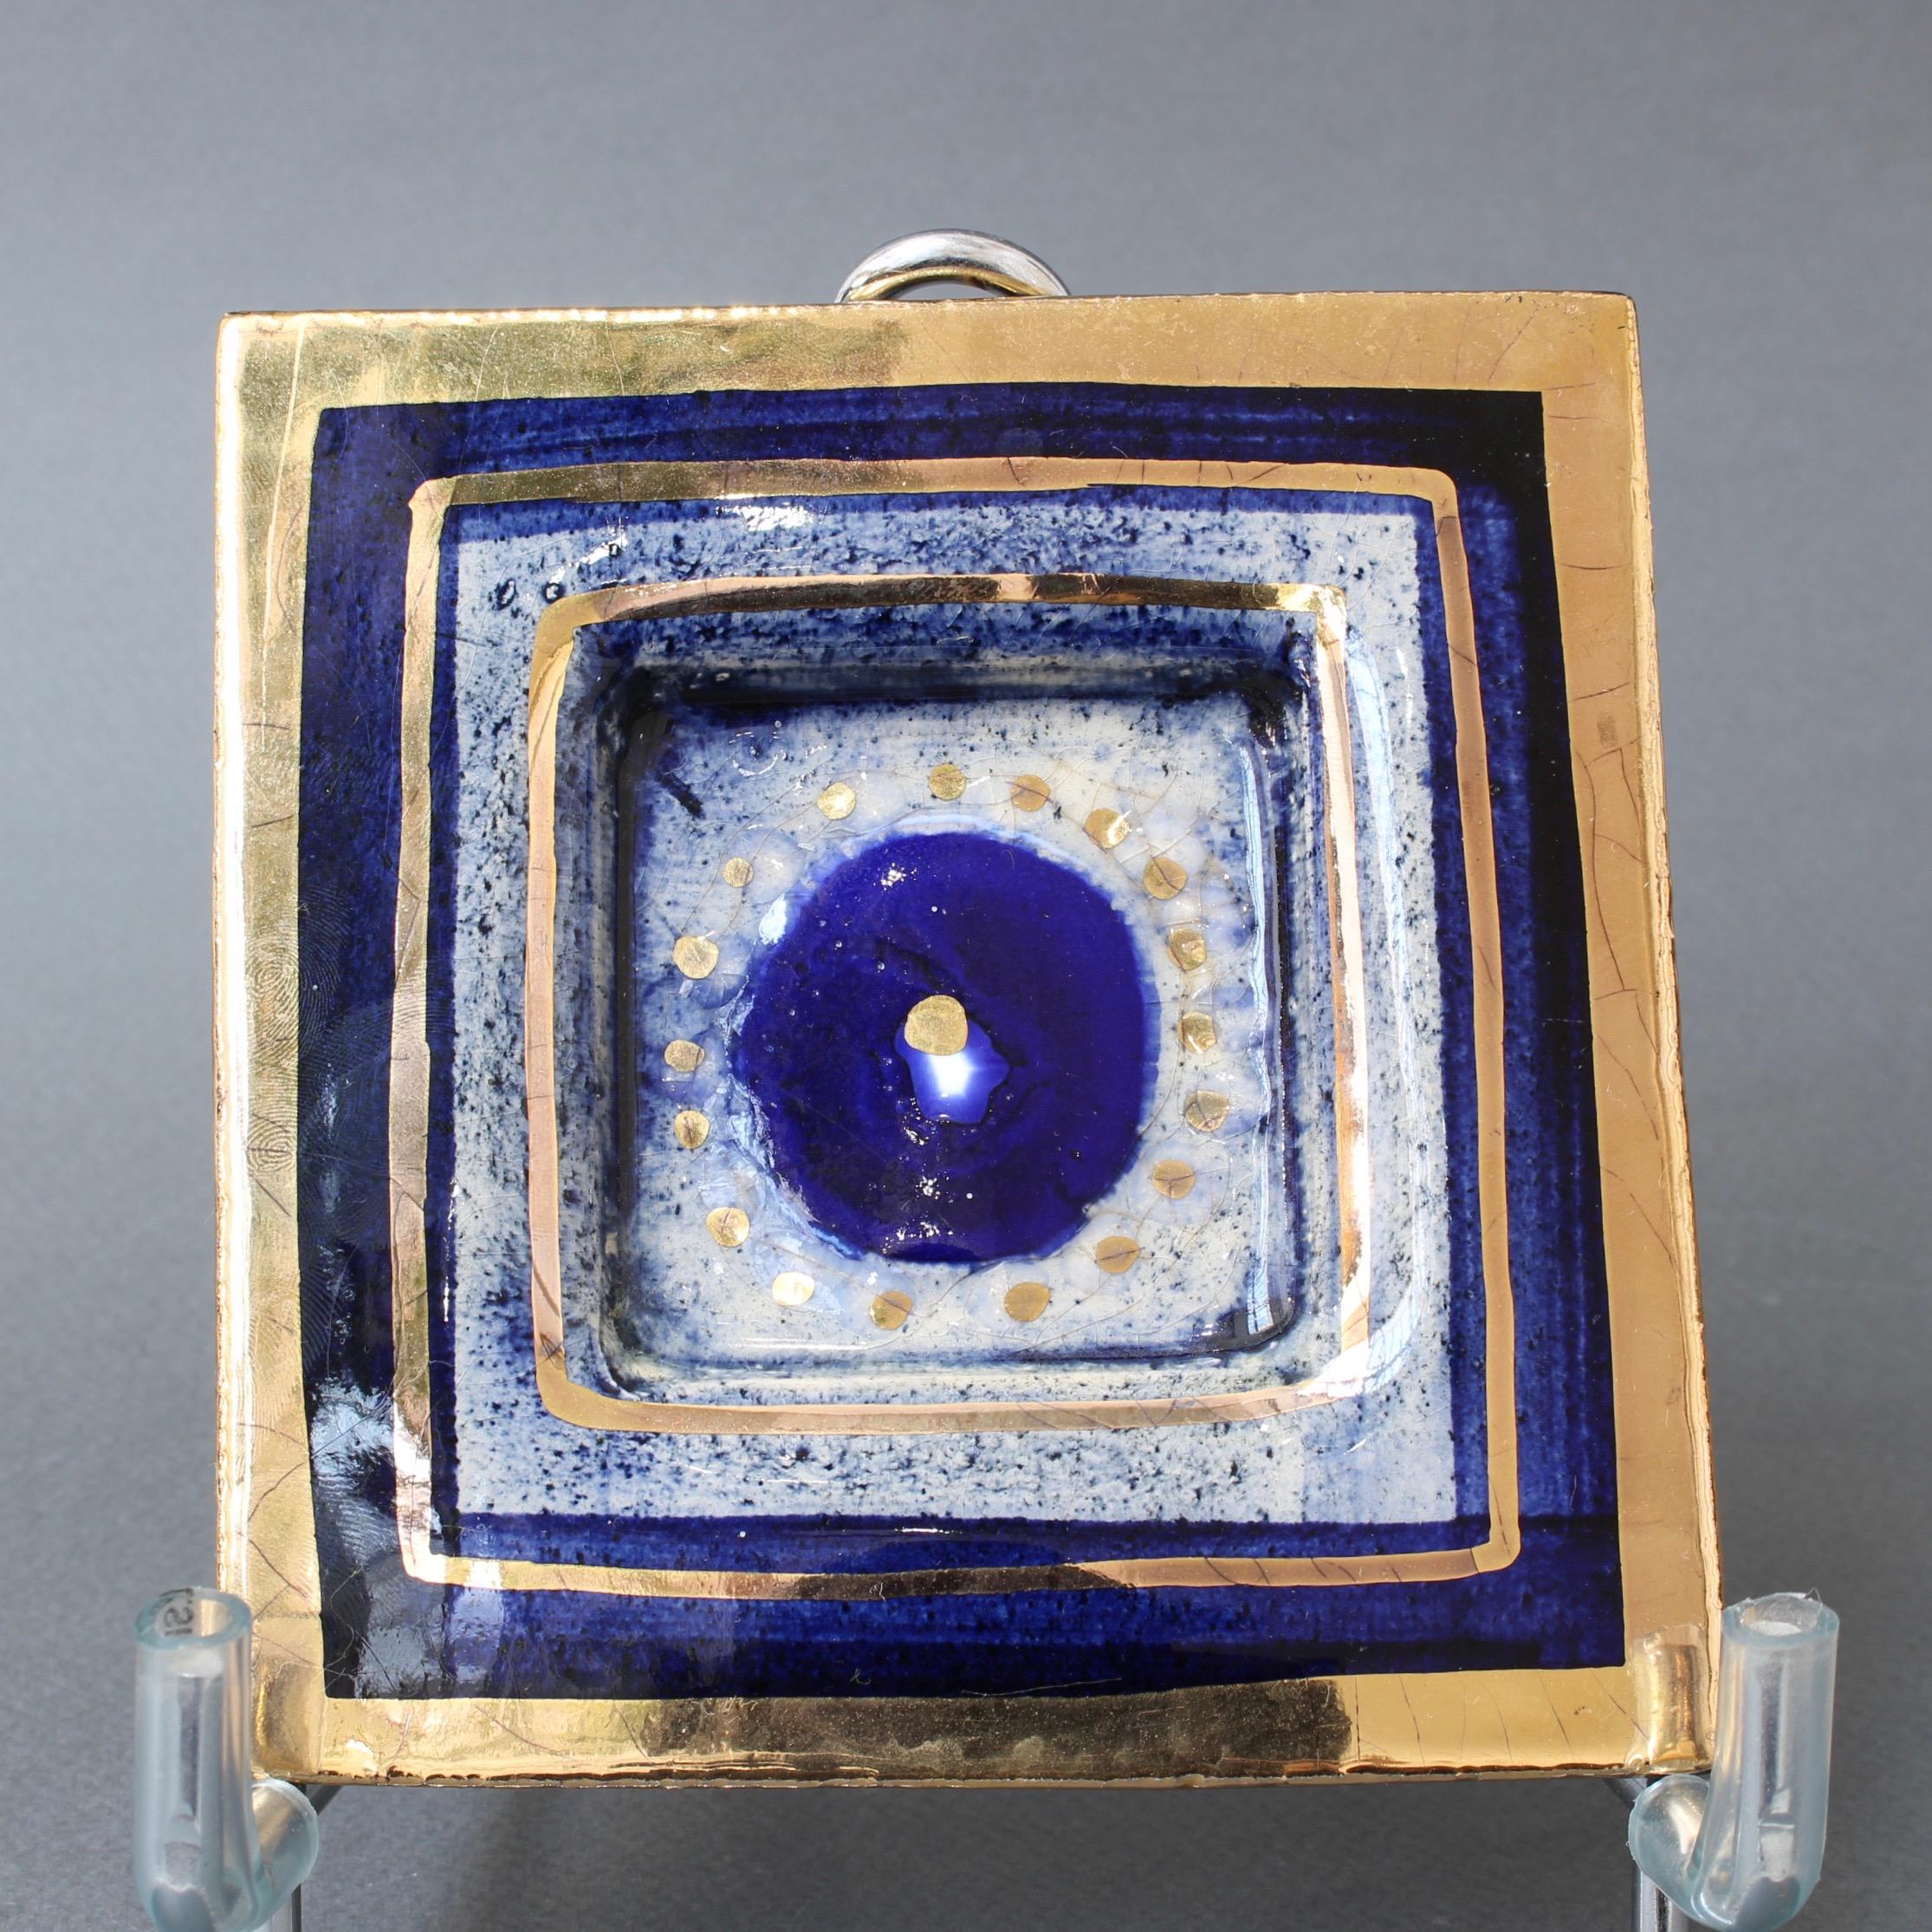 Plat décoratif/vide-poche français attribué au céramiste Georges Pelletier (datant des années 1970 environ). Petite céramique faite à la main avec bordure bleu crépuscule et craquelures or lustré. La base creuse du plat présente un grand cercle bleu